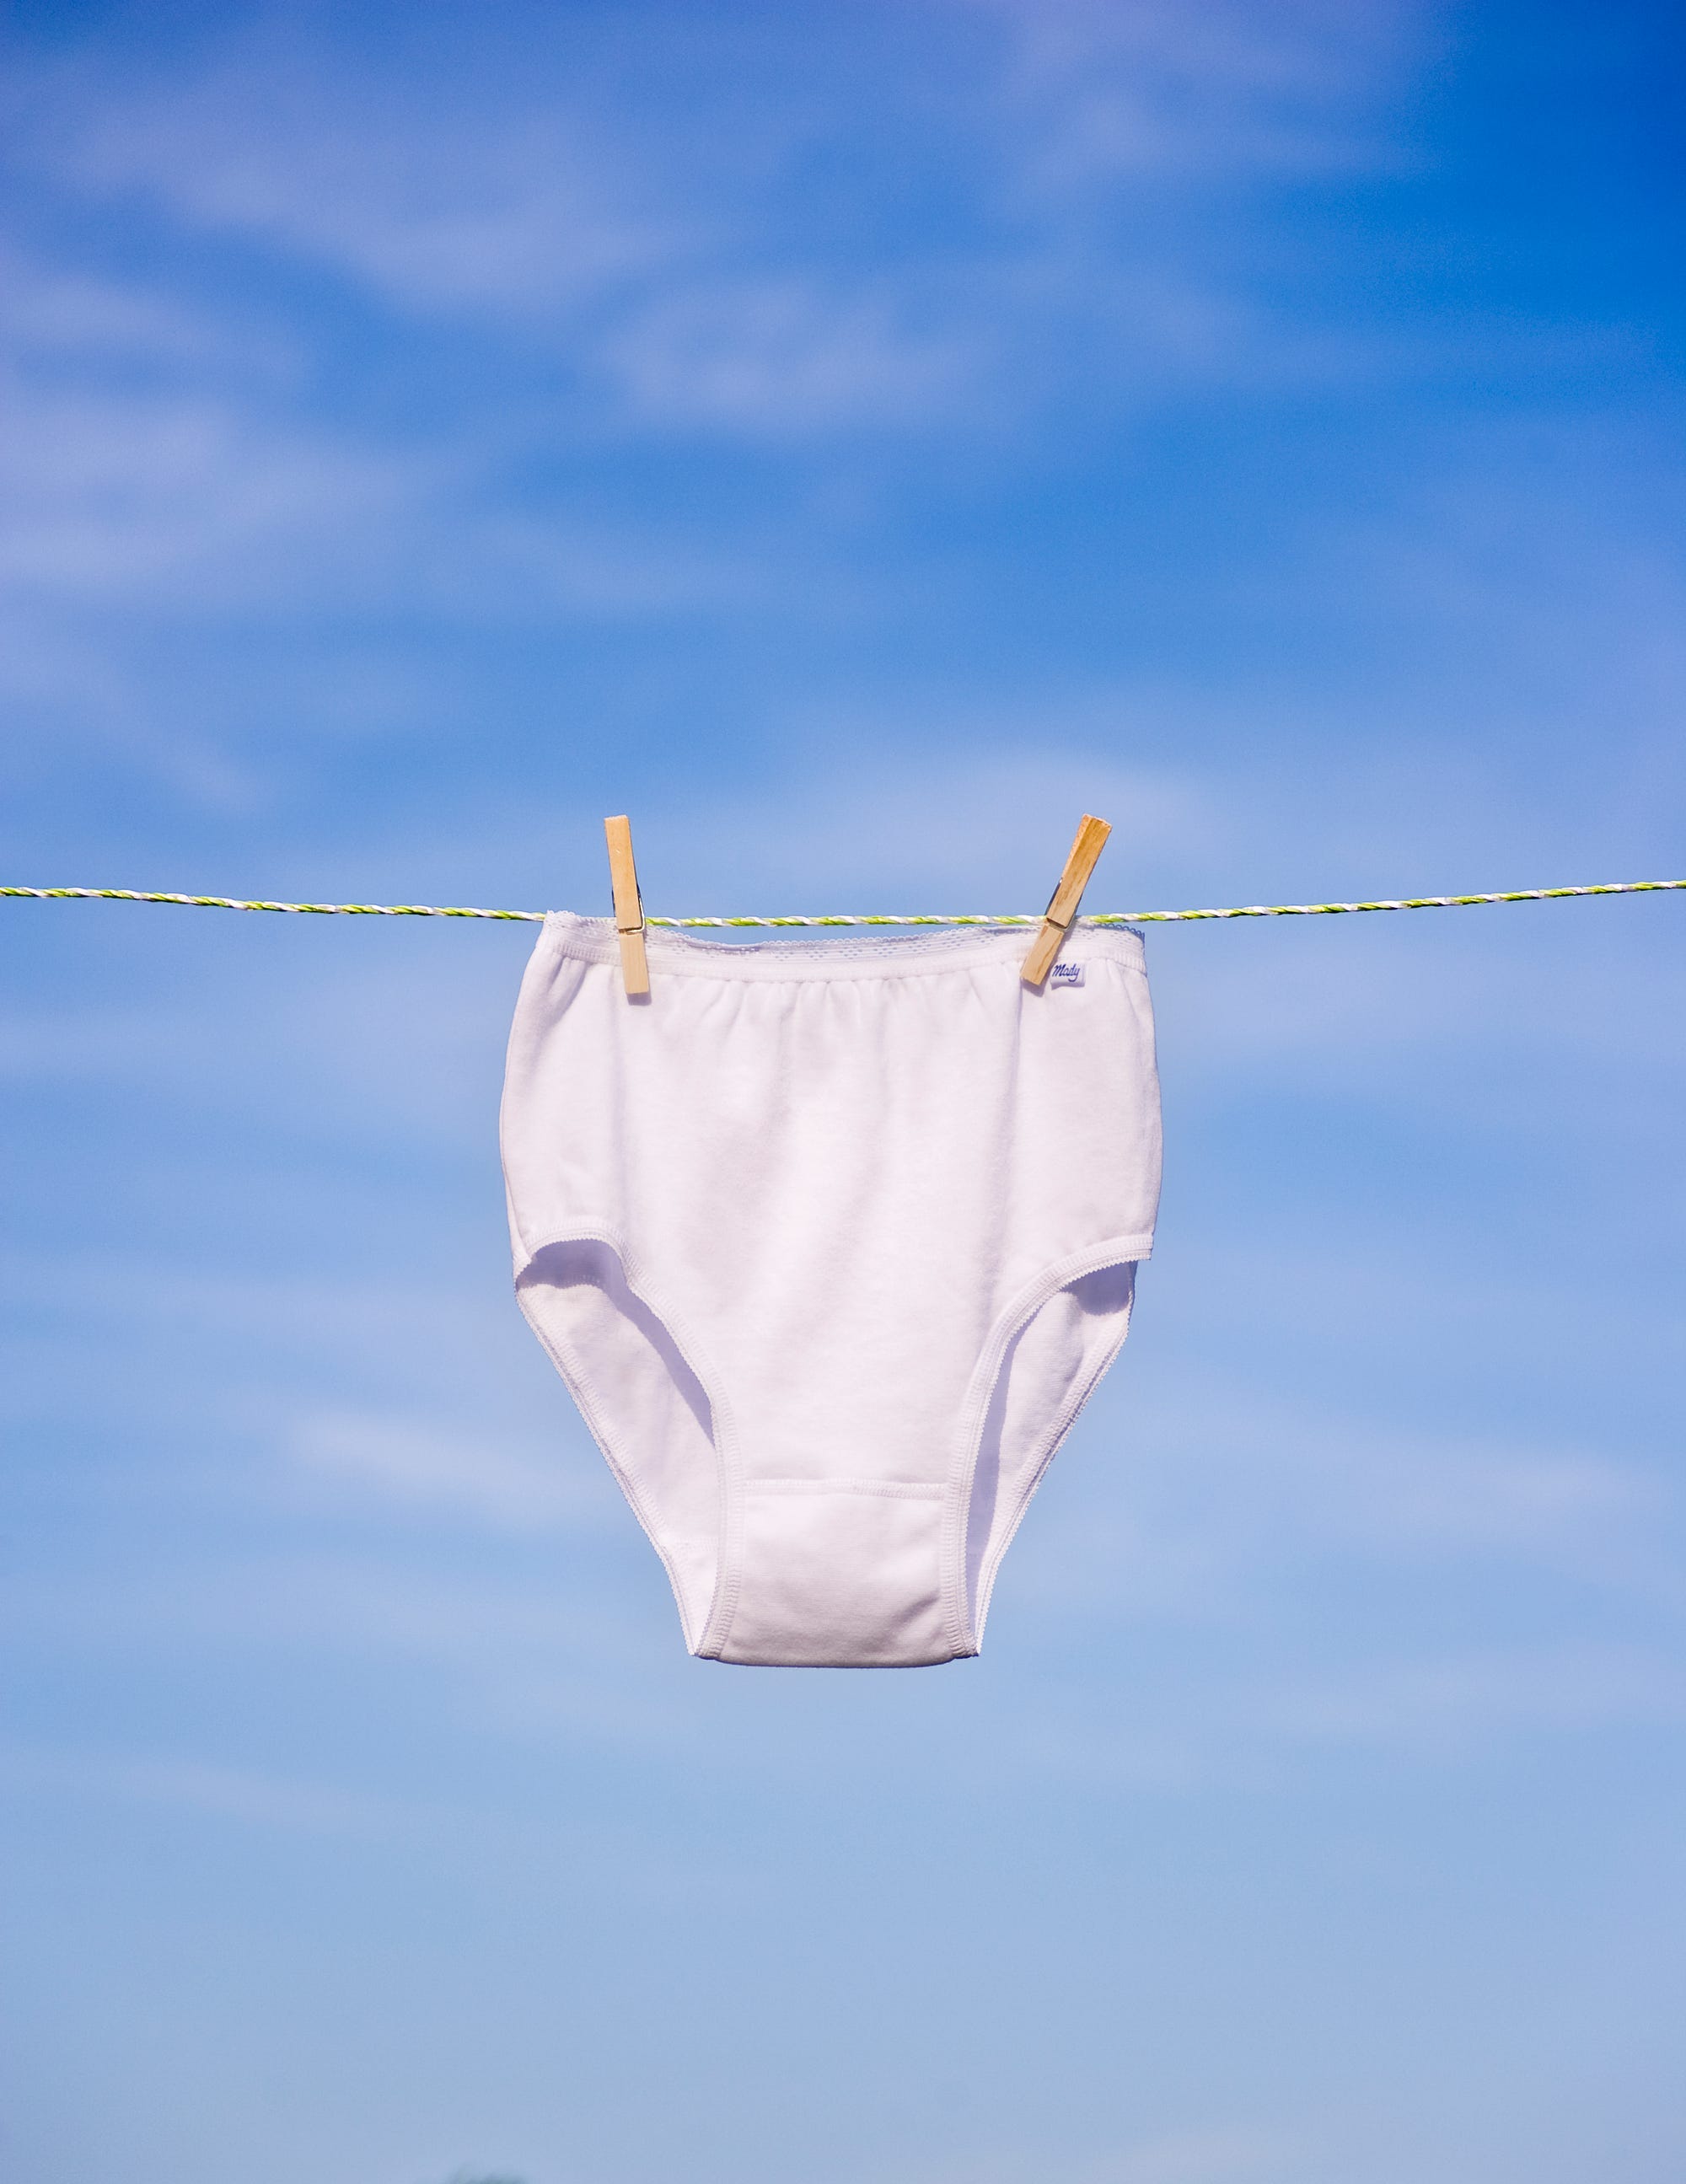 Travel Tips: ExOfficio Underwear Is the Best Travel Wear